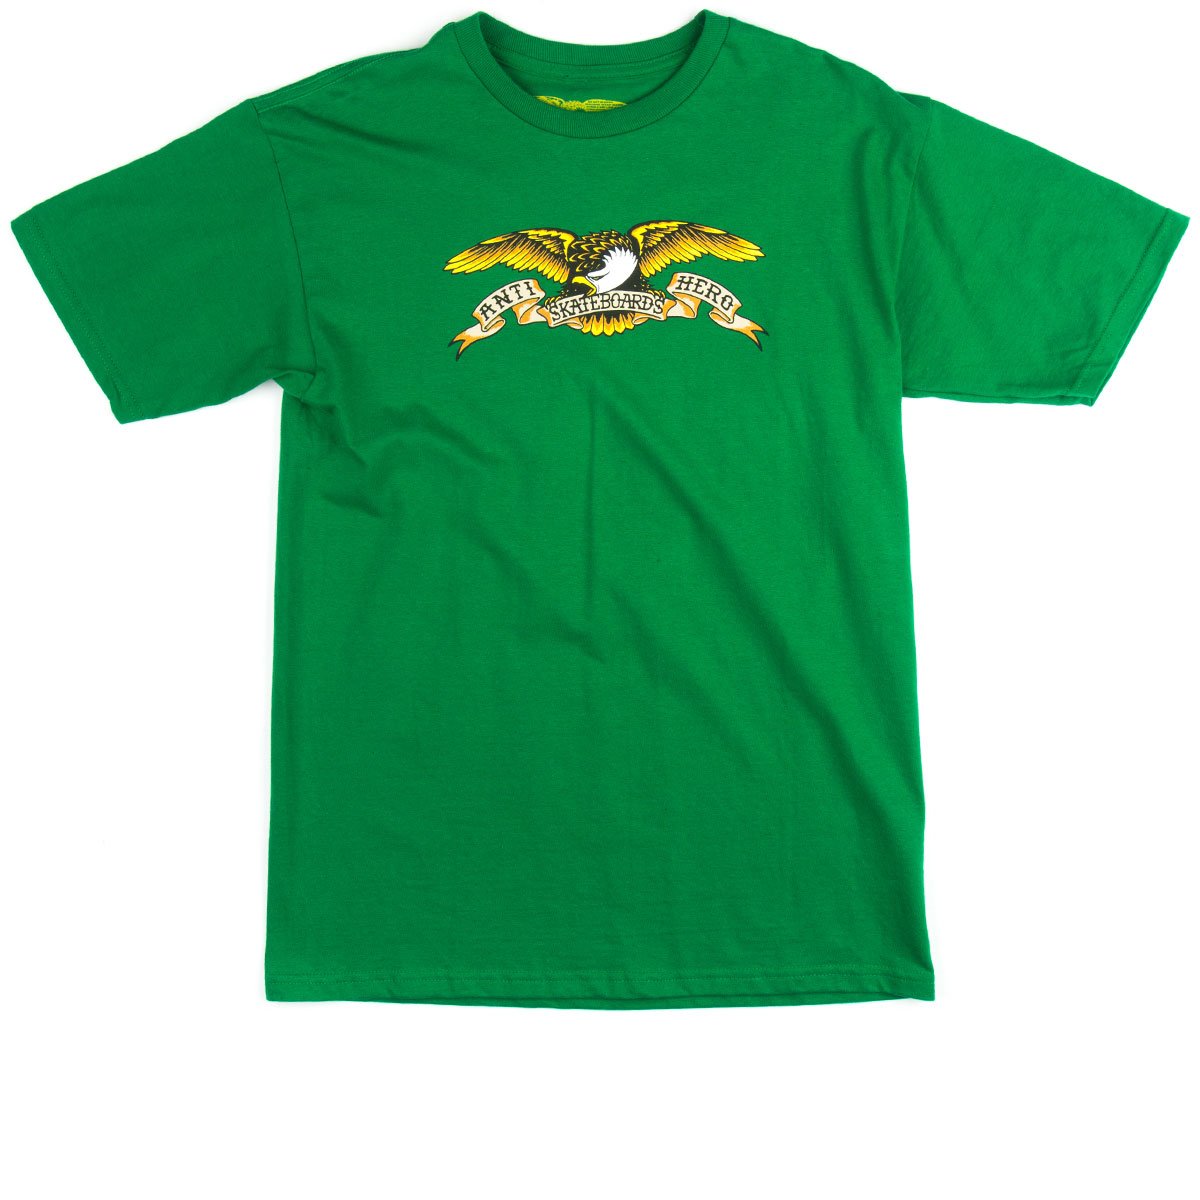 Anti Hero Eagle T-Shirt - Kelly image 1